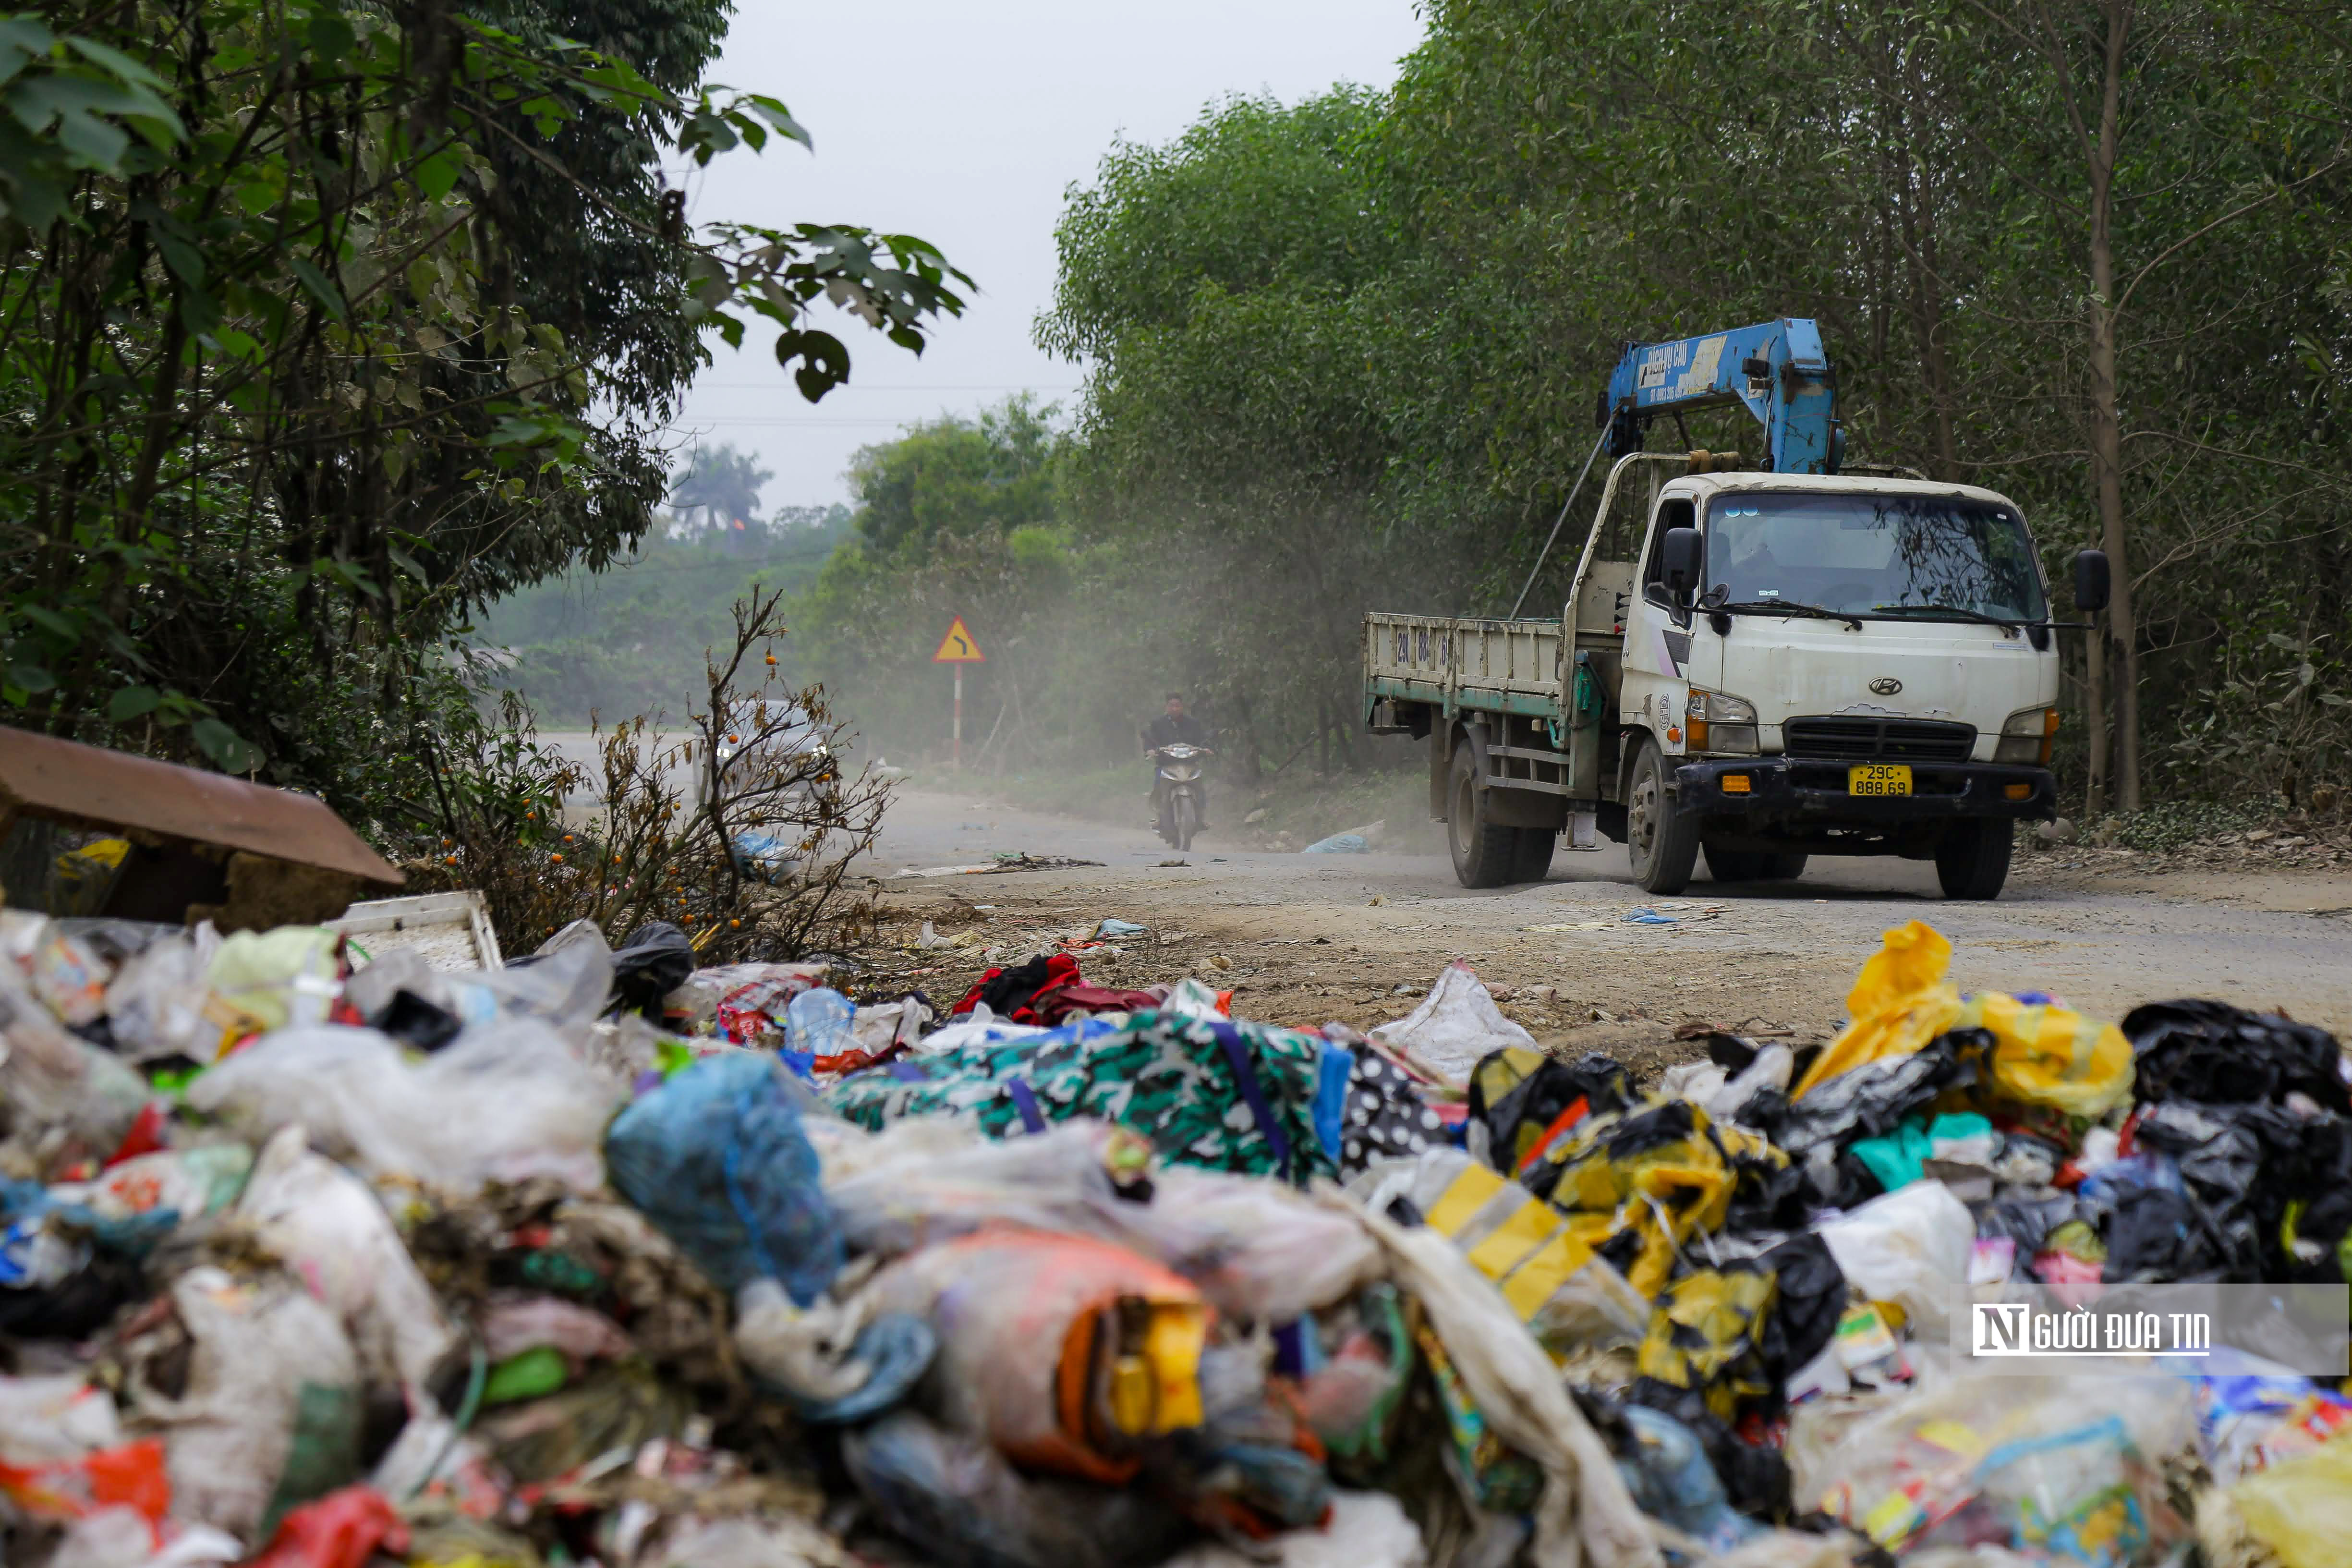 Sự kiện - Việt Nam là một trong 5 nước phát sinh và thải rác nhựa nhiều (Hình 3).